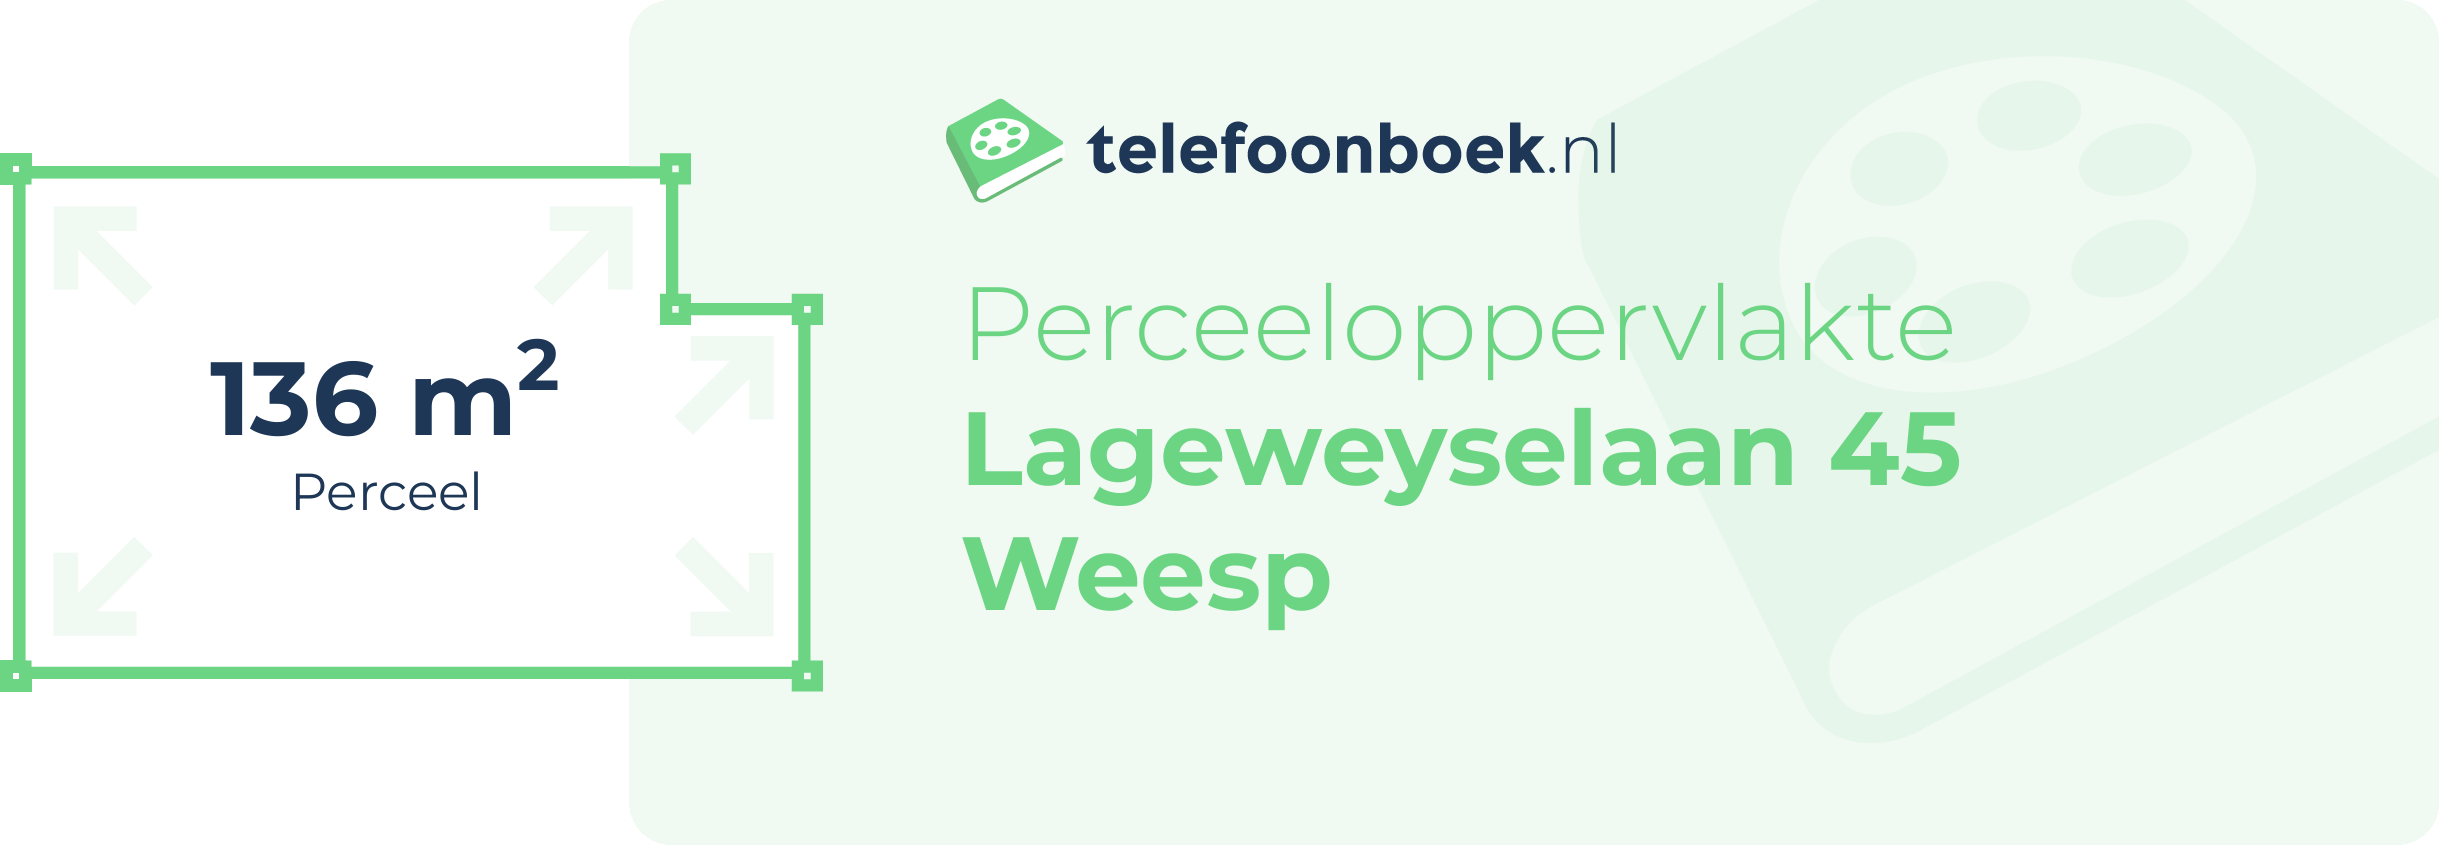 Perceeloppervlakte Lageweyselaan 45 Weesp